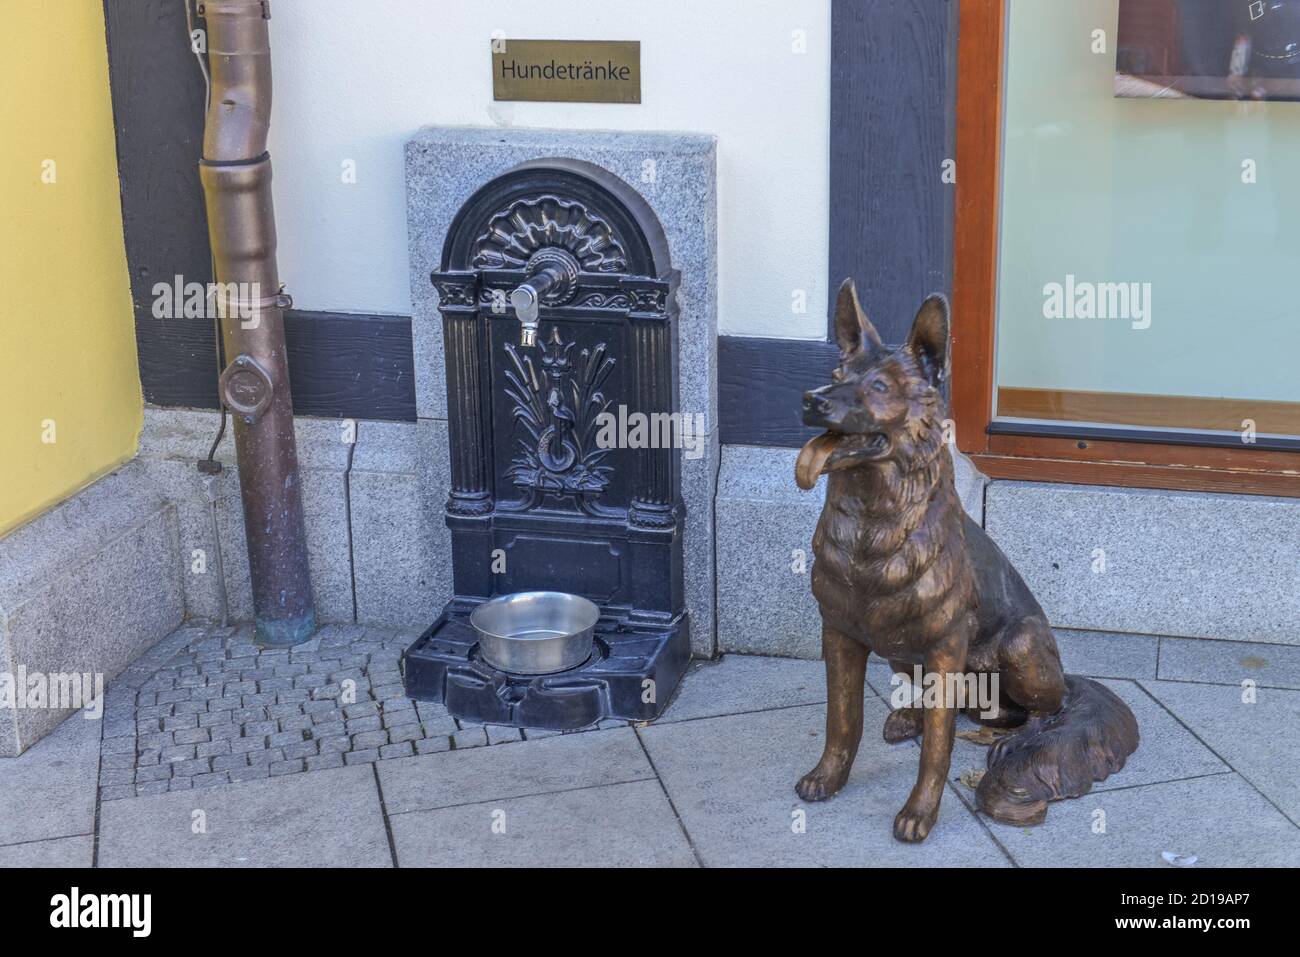 Hund Getränke, Designer Outlet B5, Wustermark, Brandenburg, Deutschland,  Hundetraenke, Designer Outlet B5, Deutschland Stockfotografie - Alamy